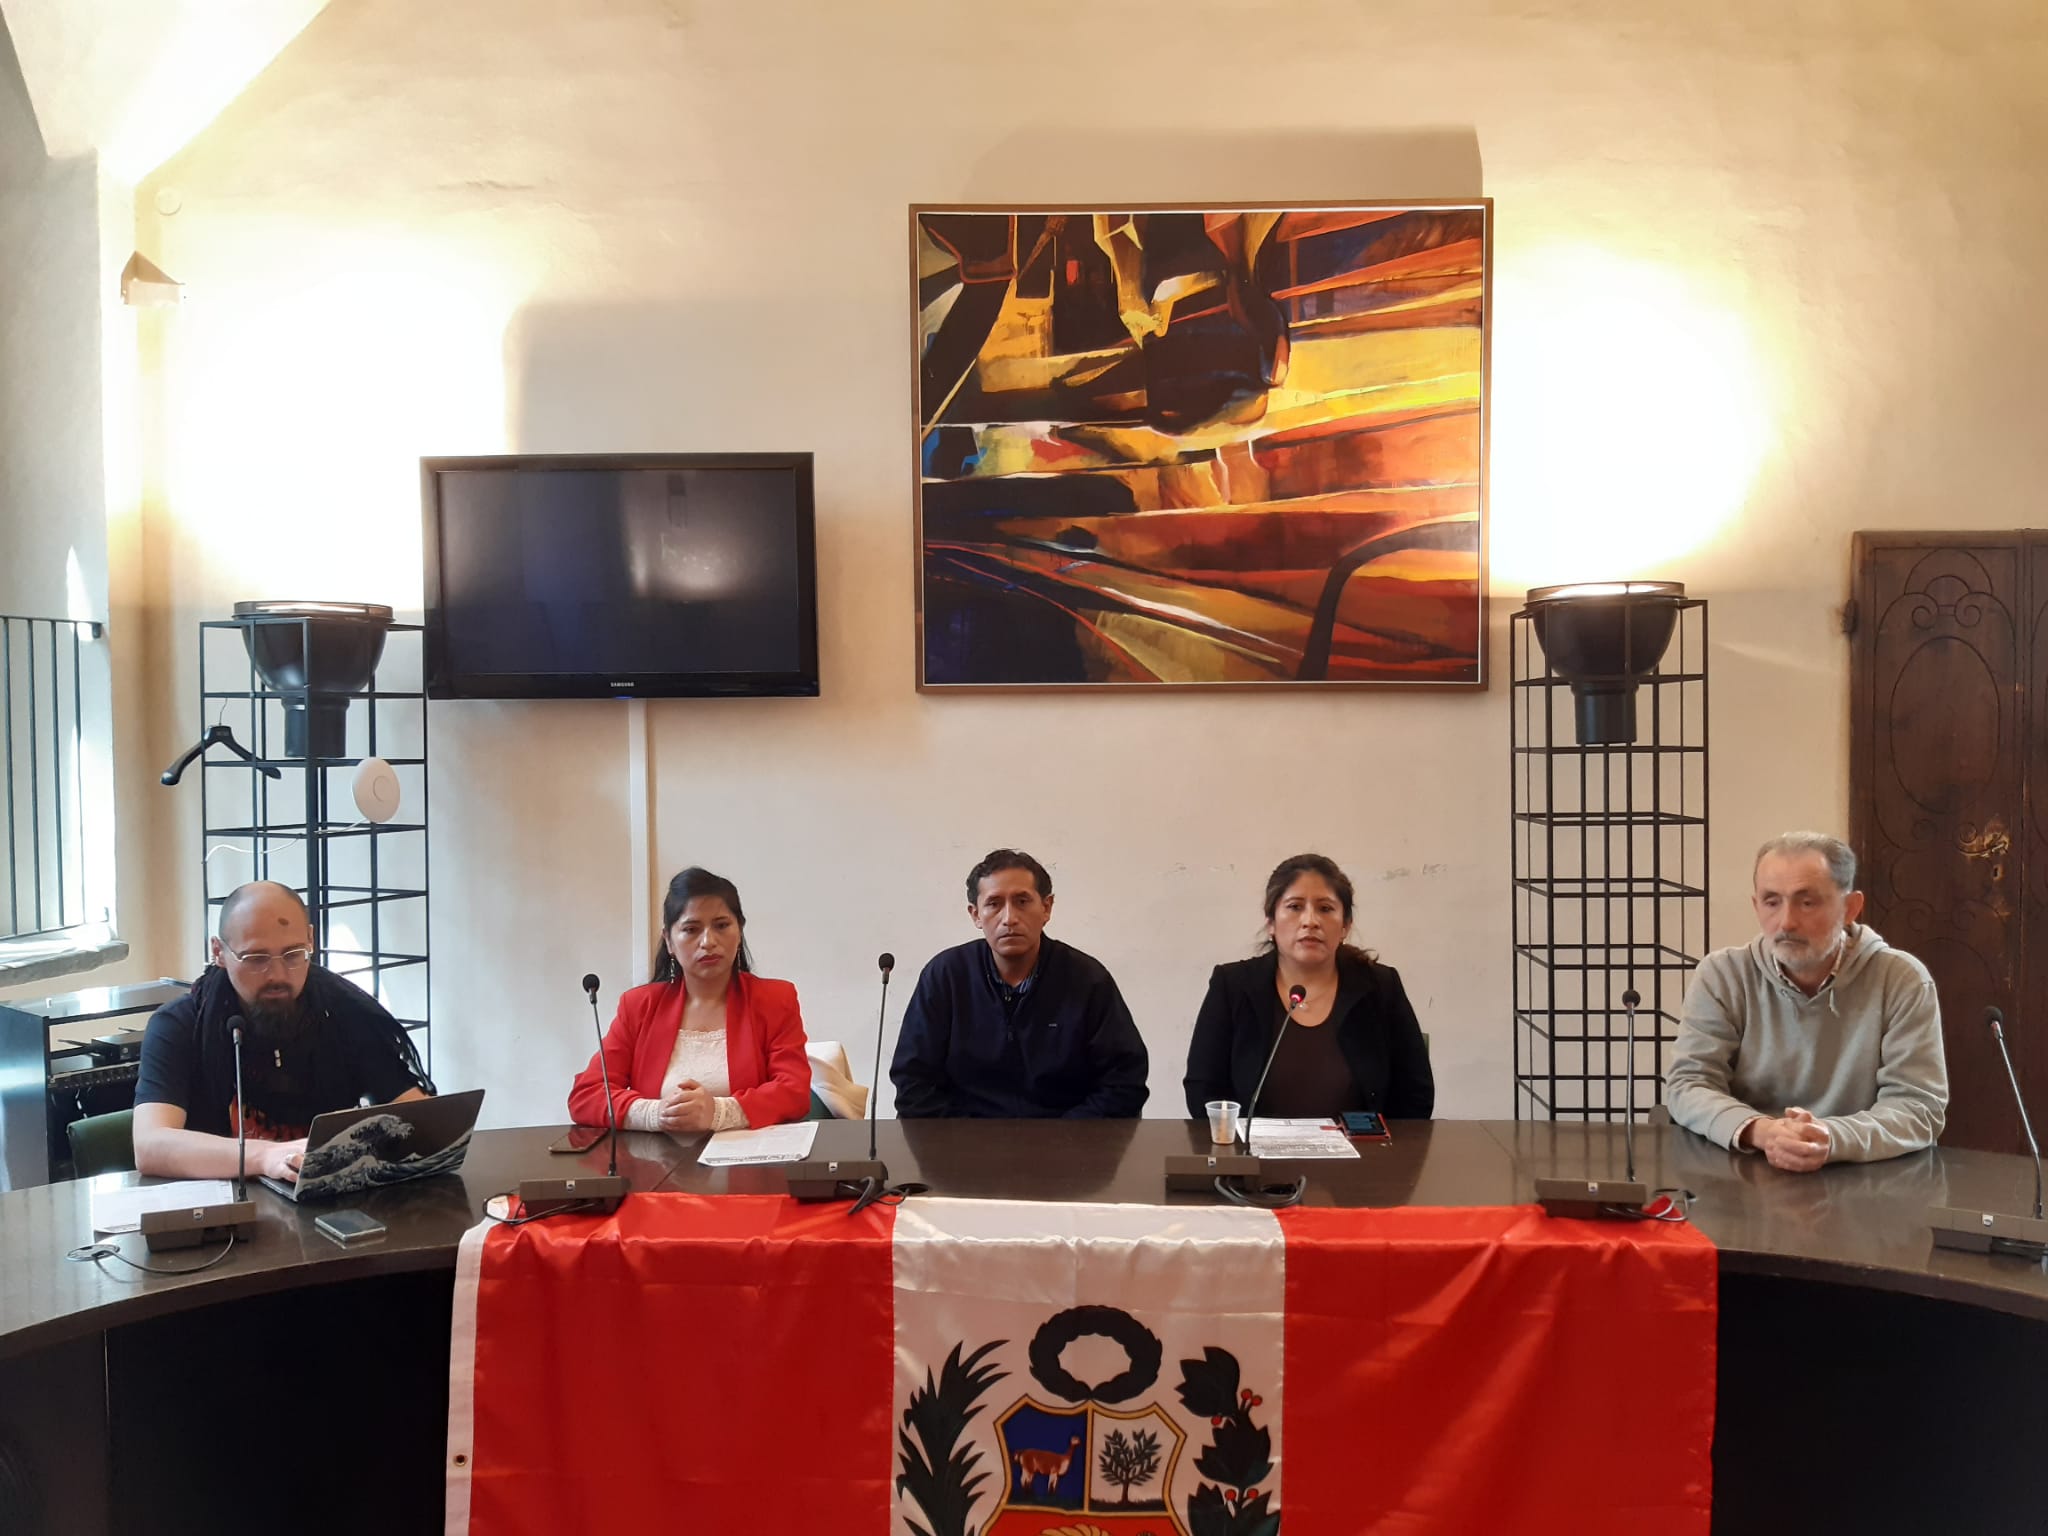 Incontro Nazionale dei Peruviani domenica 23 aprile a Firenze